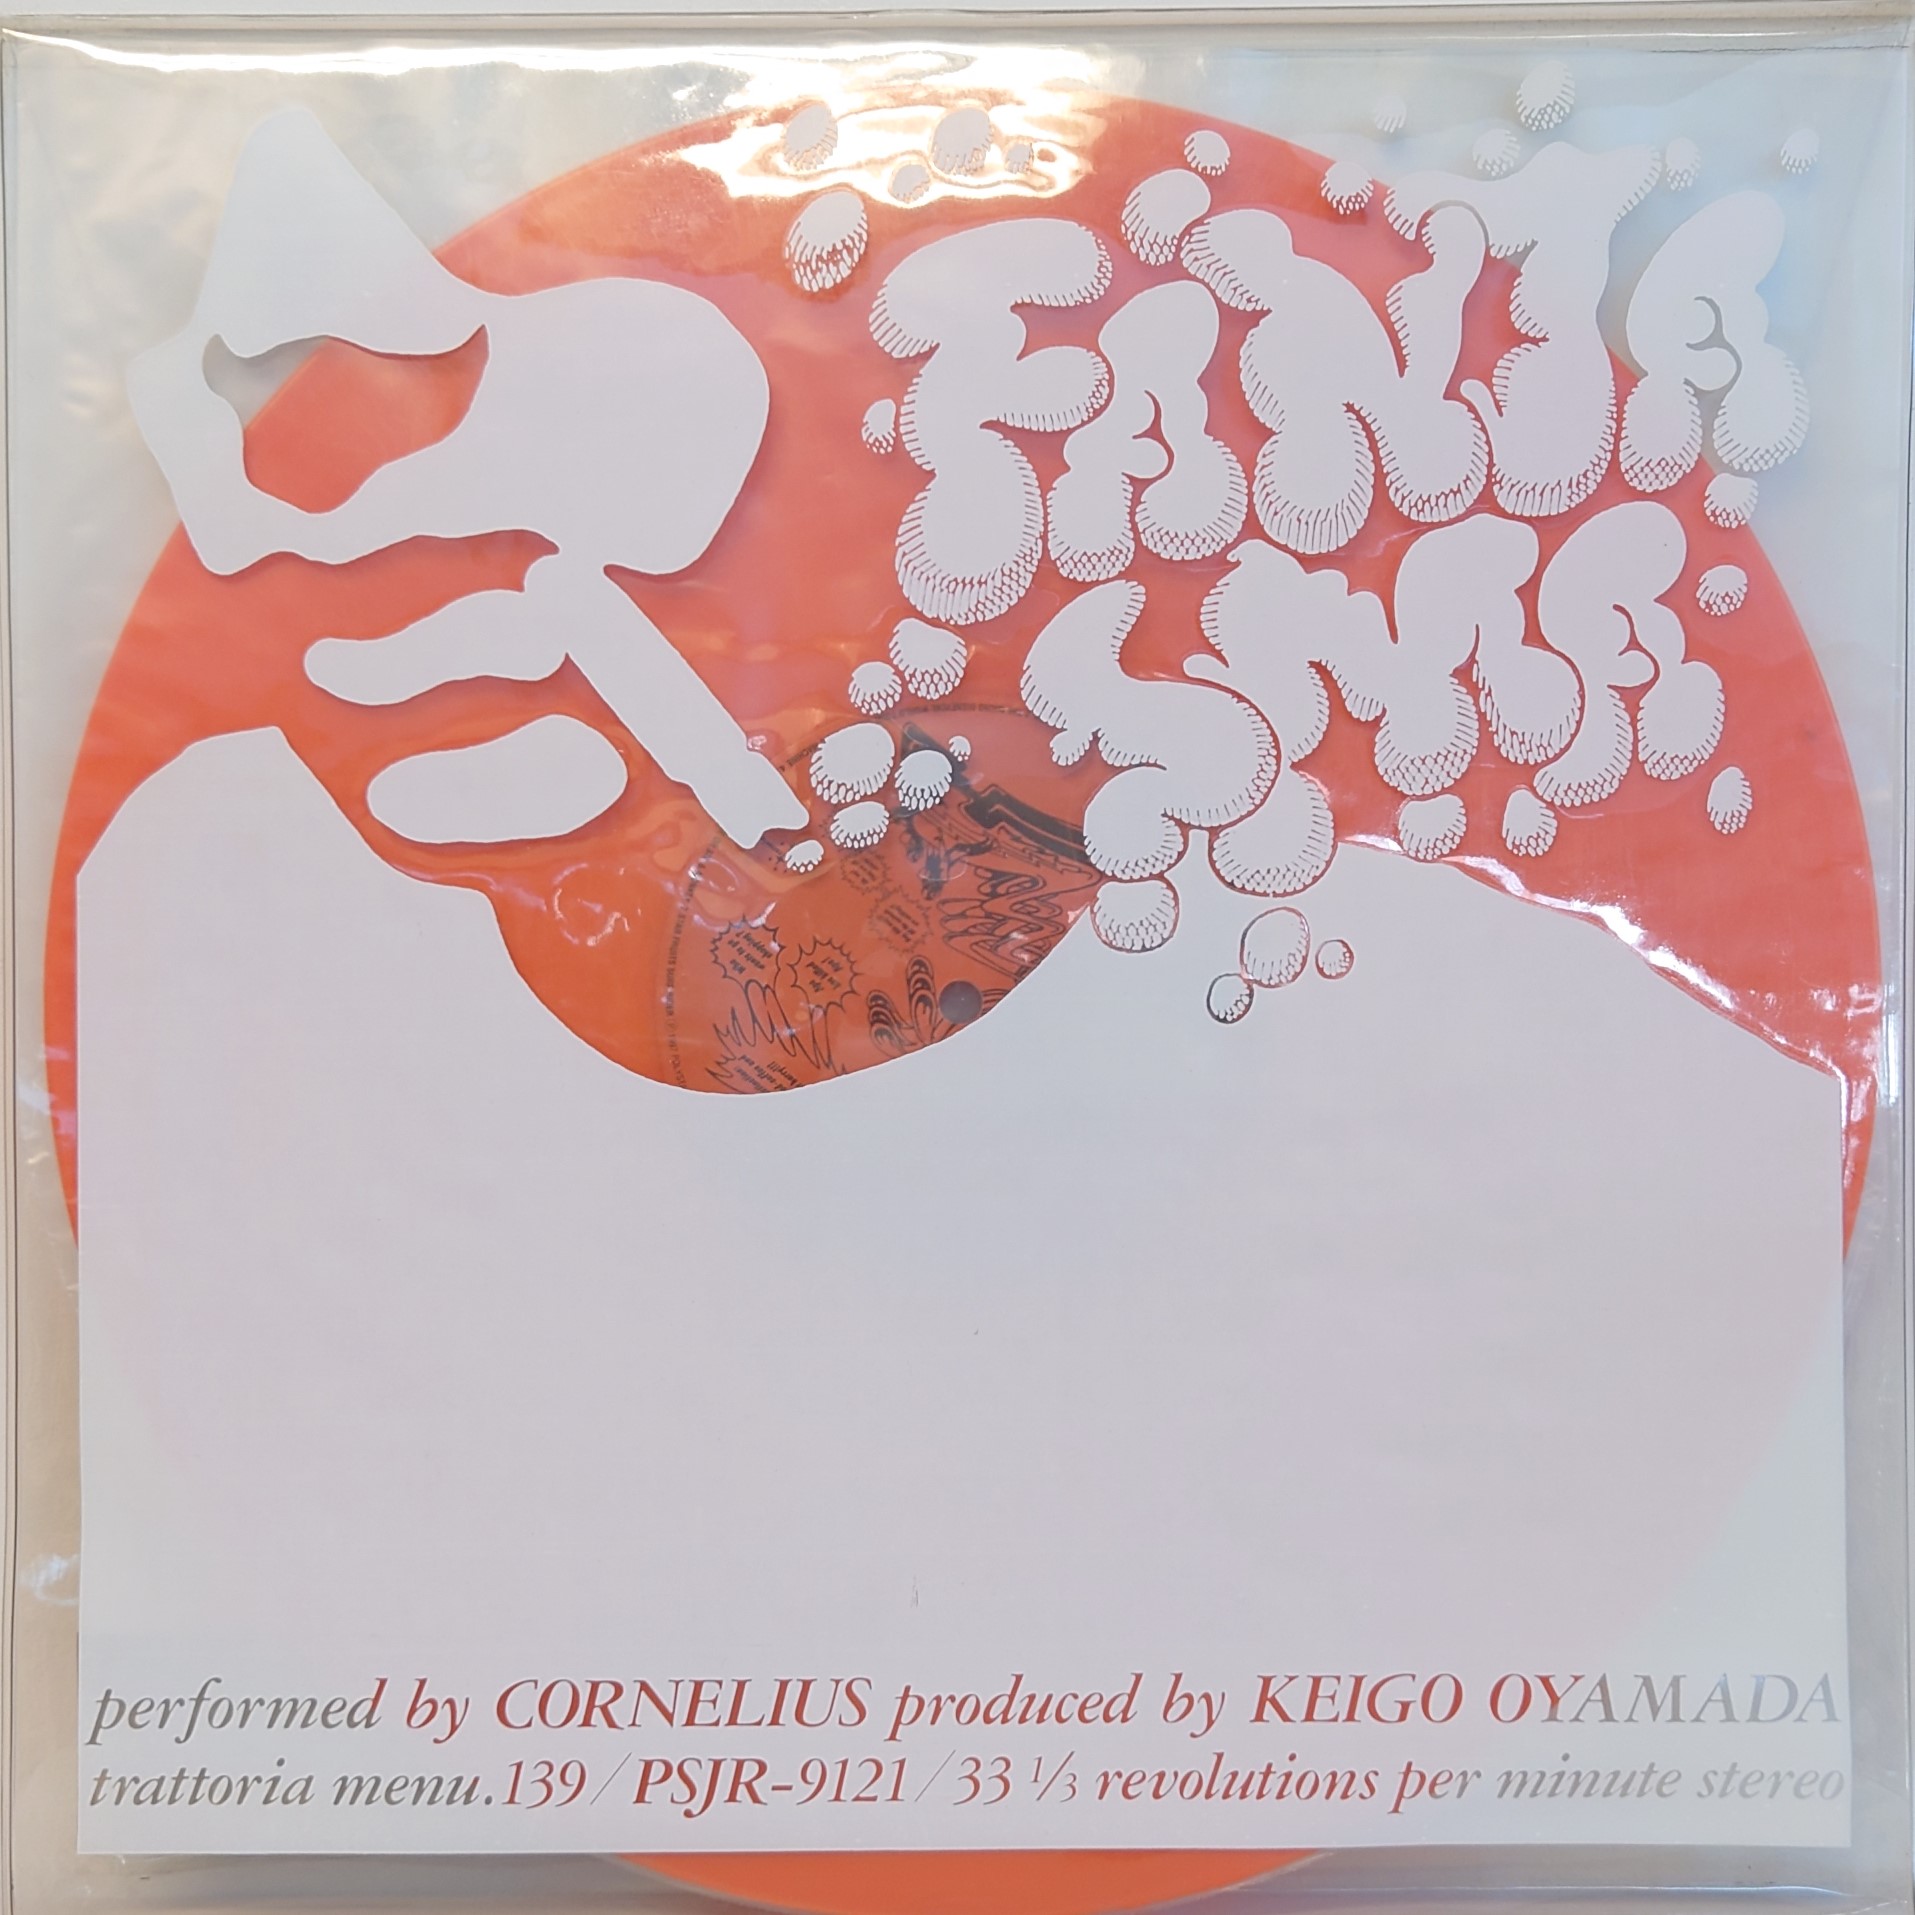 オリジナル盤 Cornelius Fantasma レコード LP コーネリアス - レコード